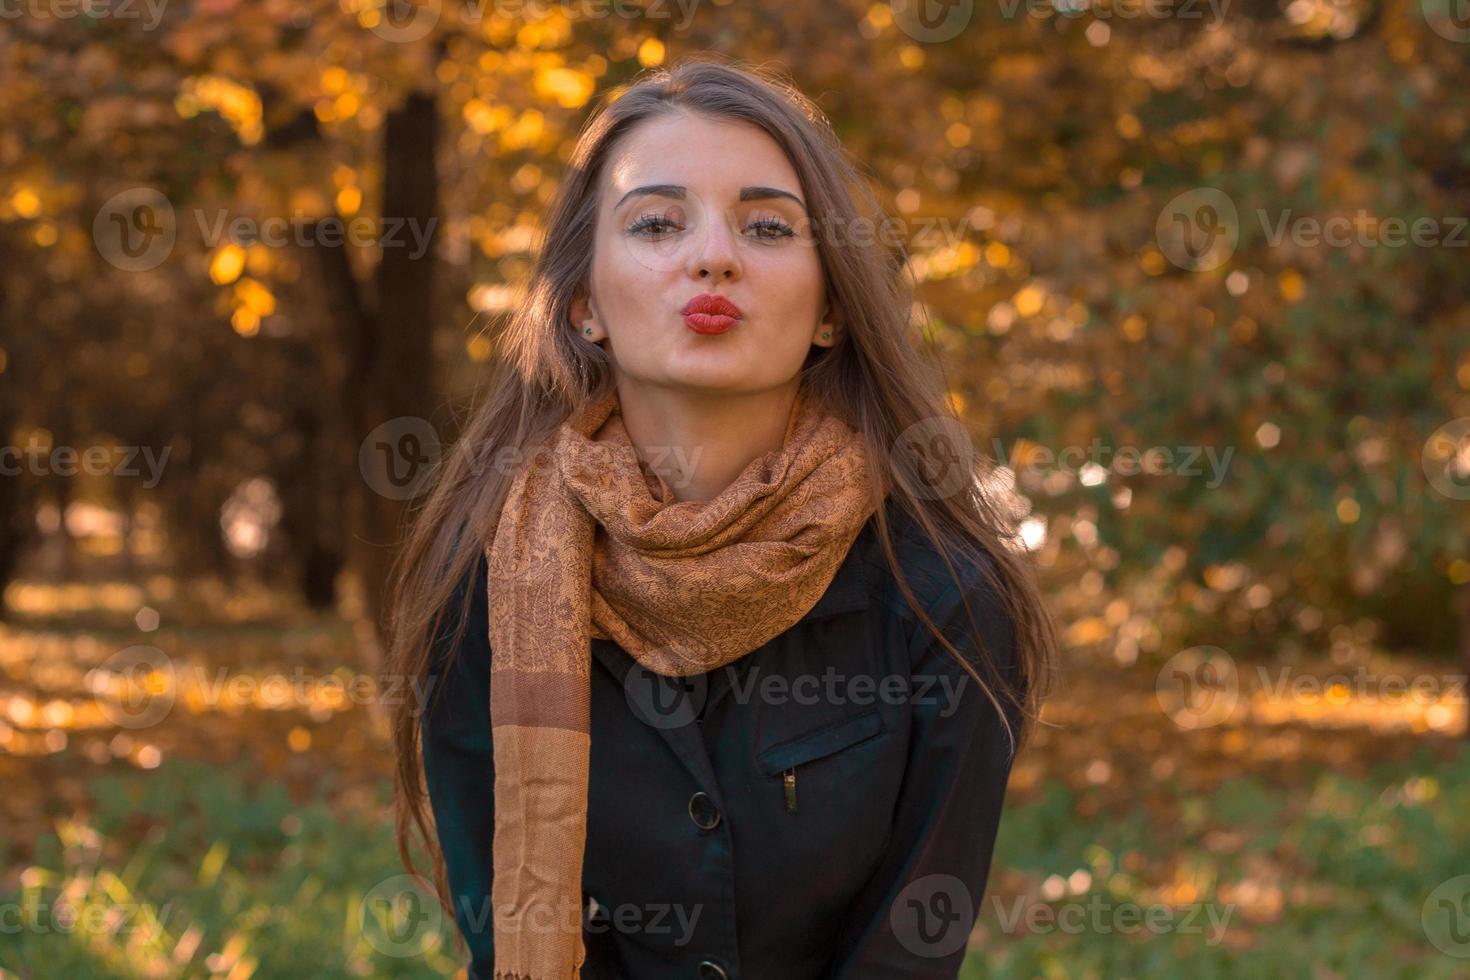 hermosa chica se encuentra en el parque de otoño en una bufanda larga mirando directamente y envía un beso foto